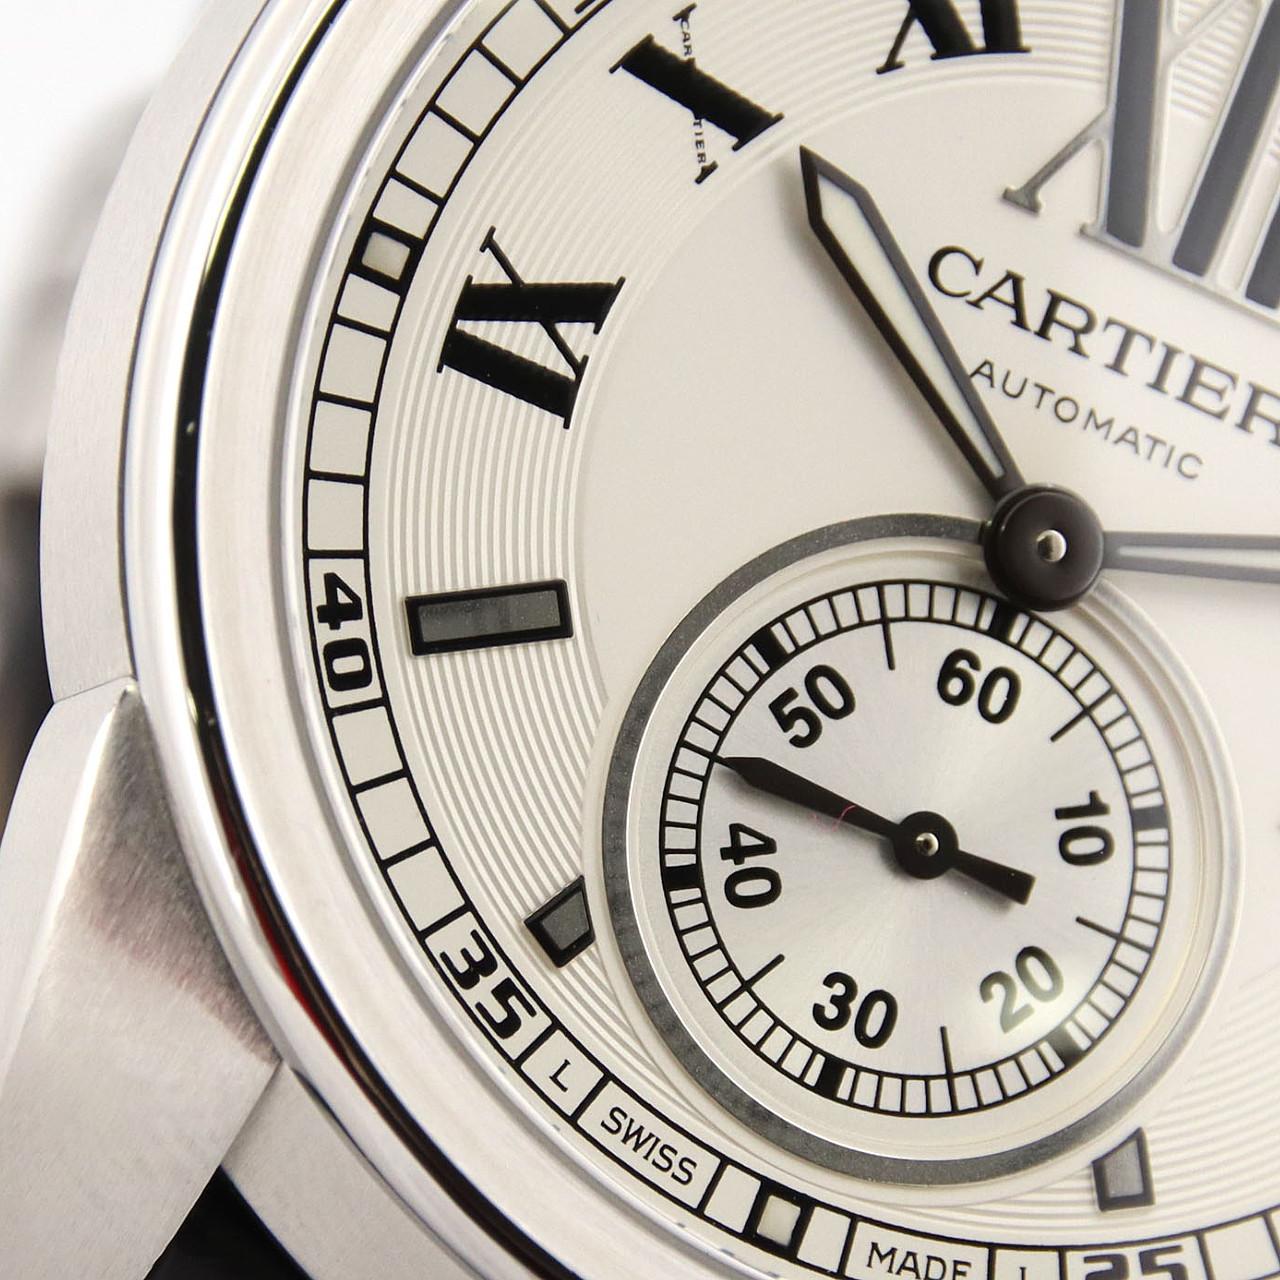 Cartier Calibre de Cartier W7100037 SS自動上弦